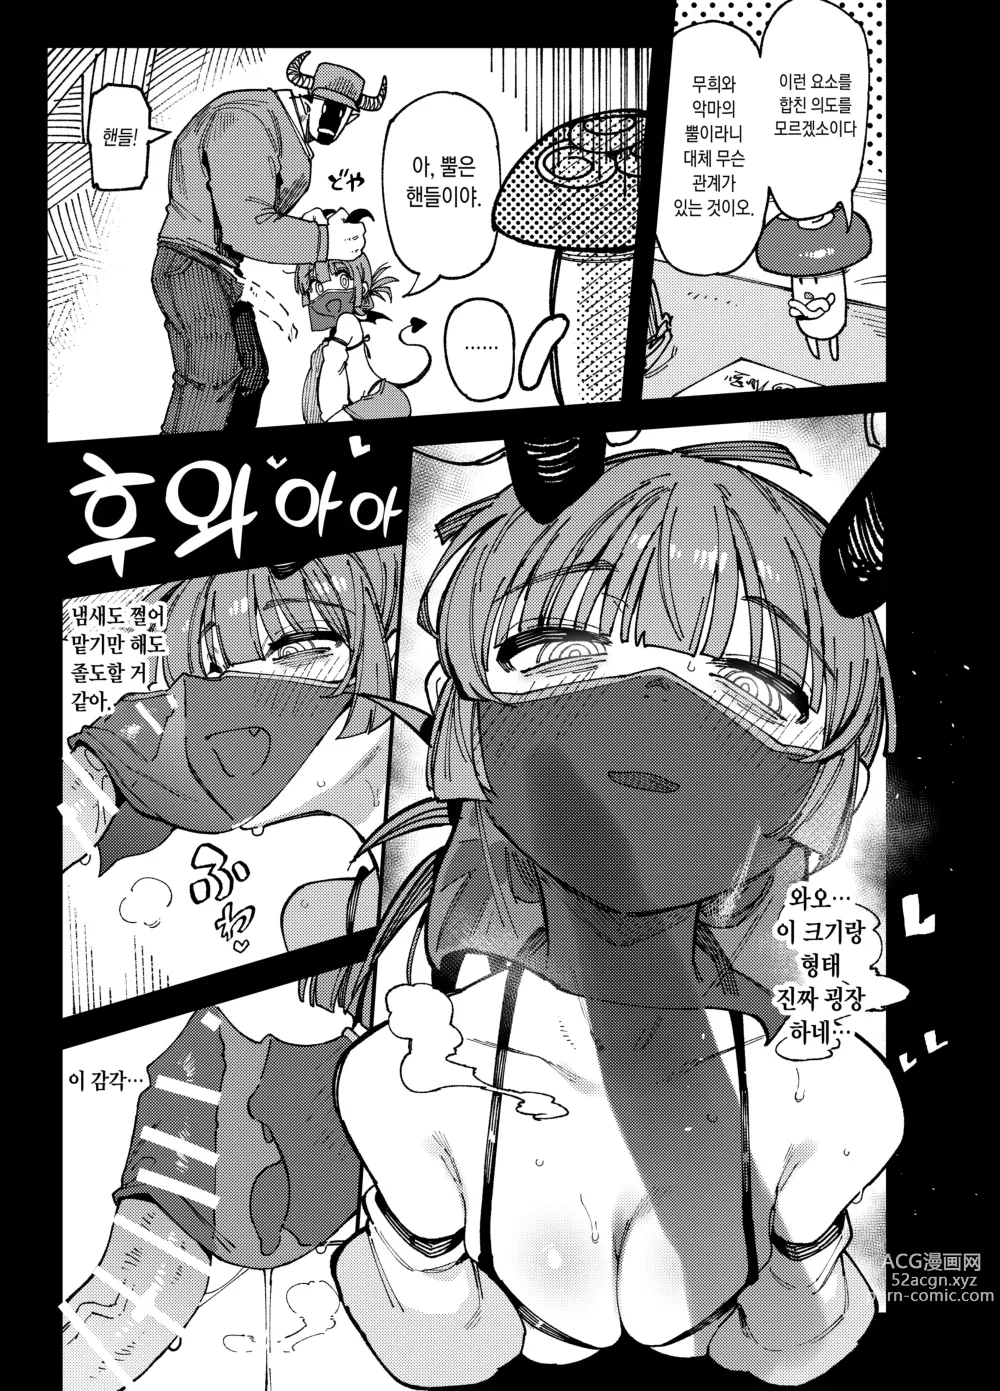 Page 30 of doujinshi 집이 너무 습해서 생긴 환각을 유발하는 버섯을 잘못 먹고 발정난 뒤의 이야기